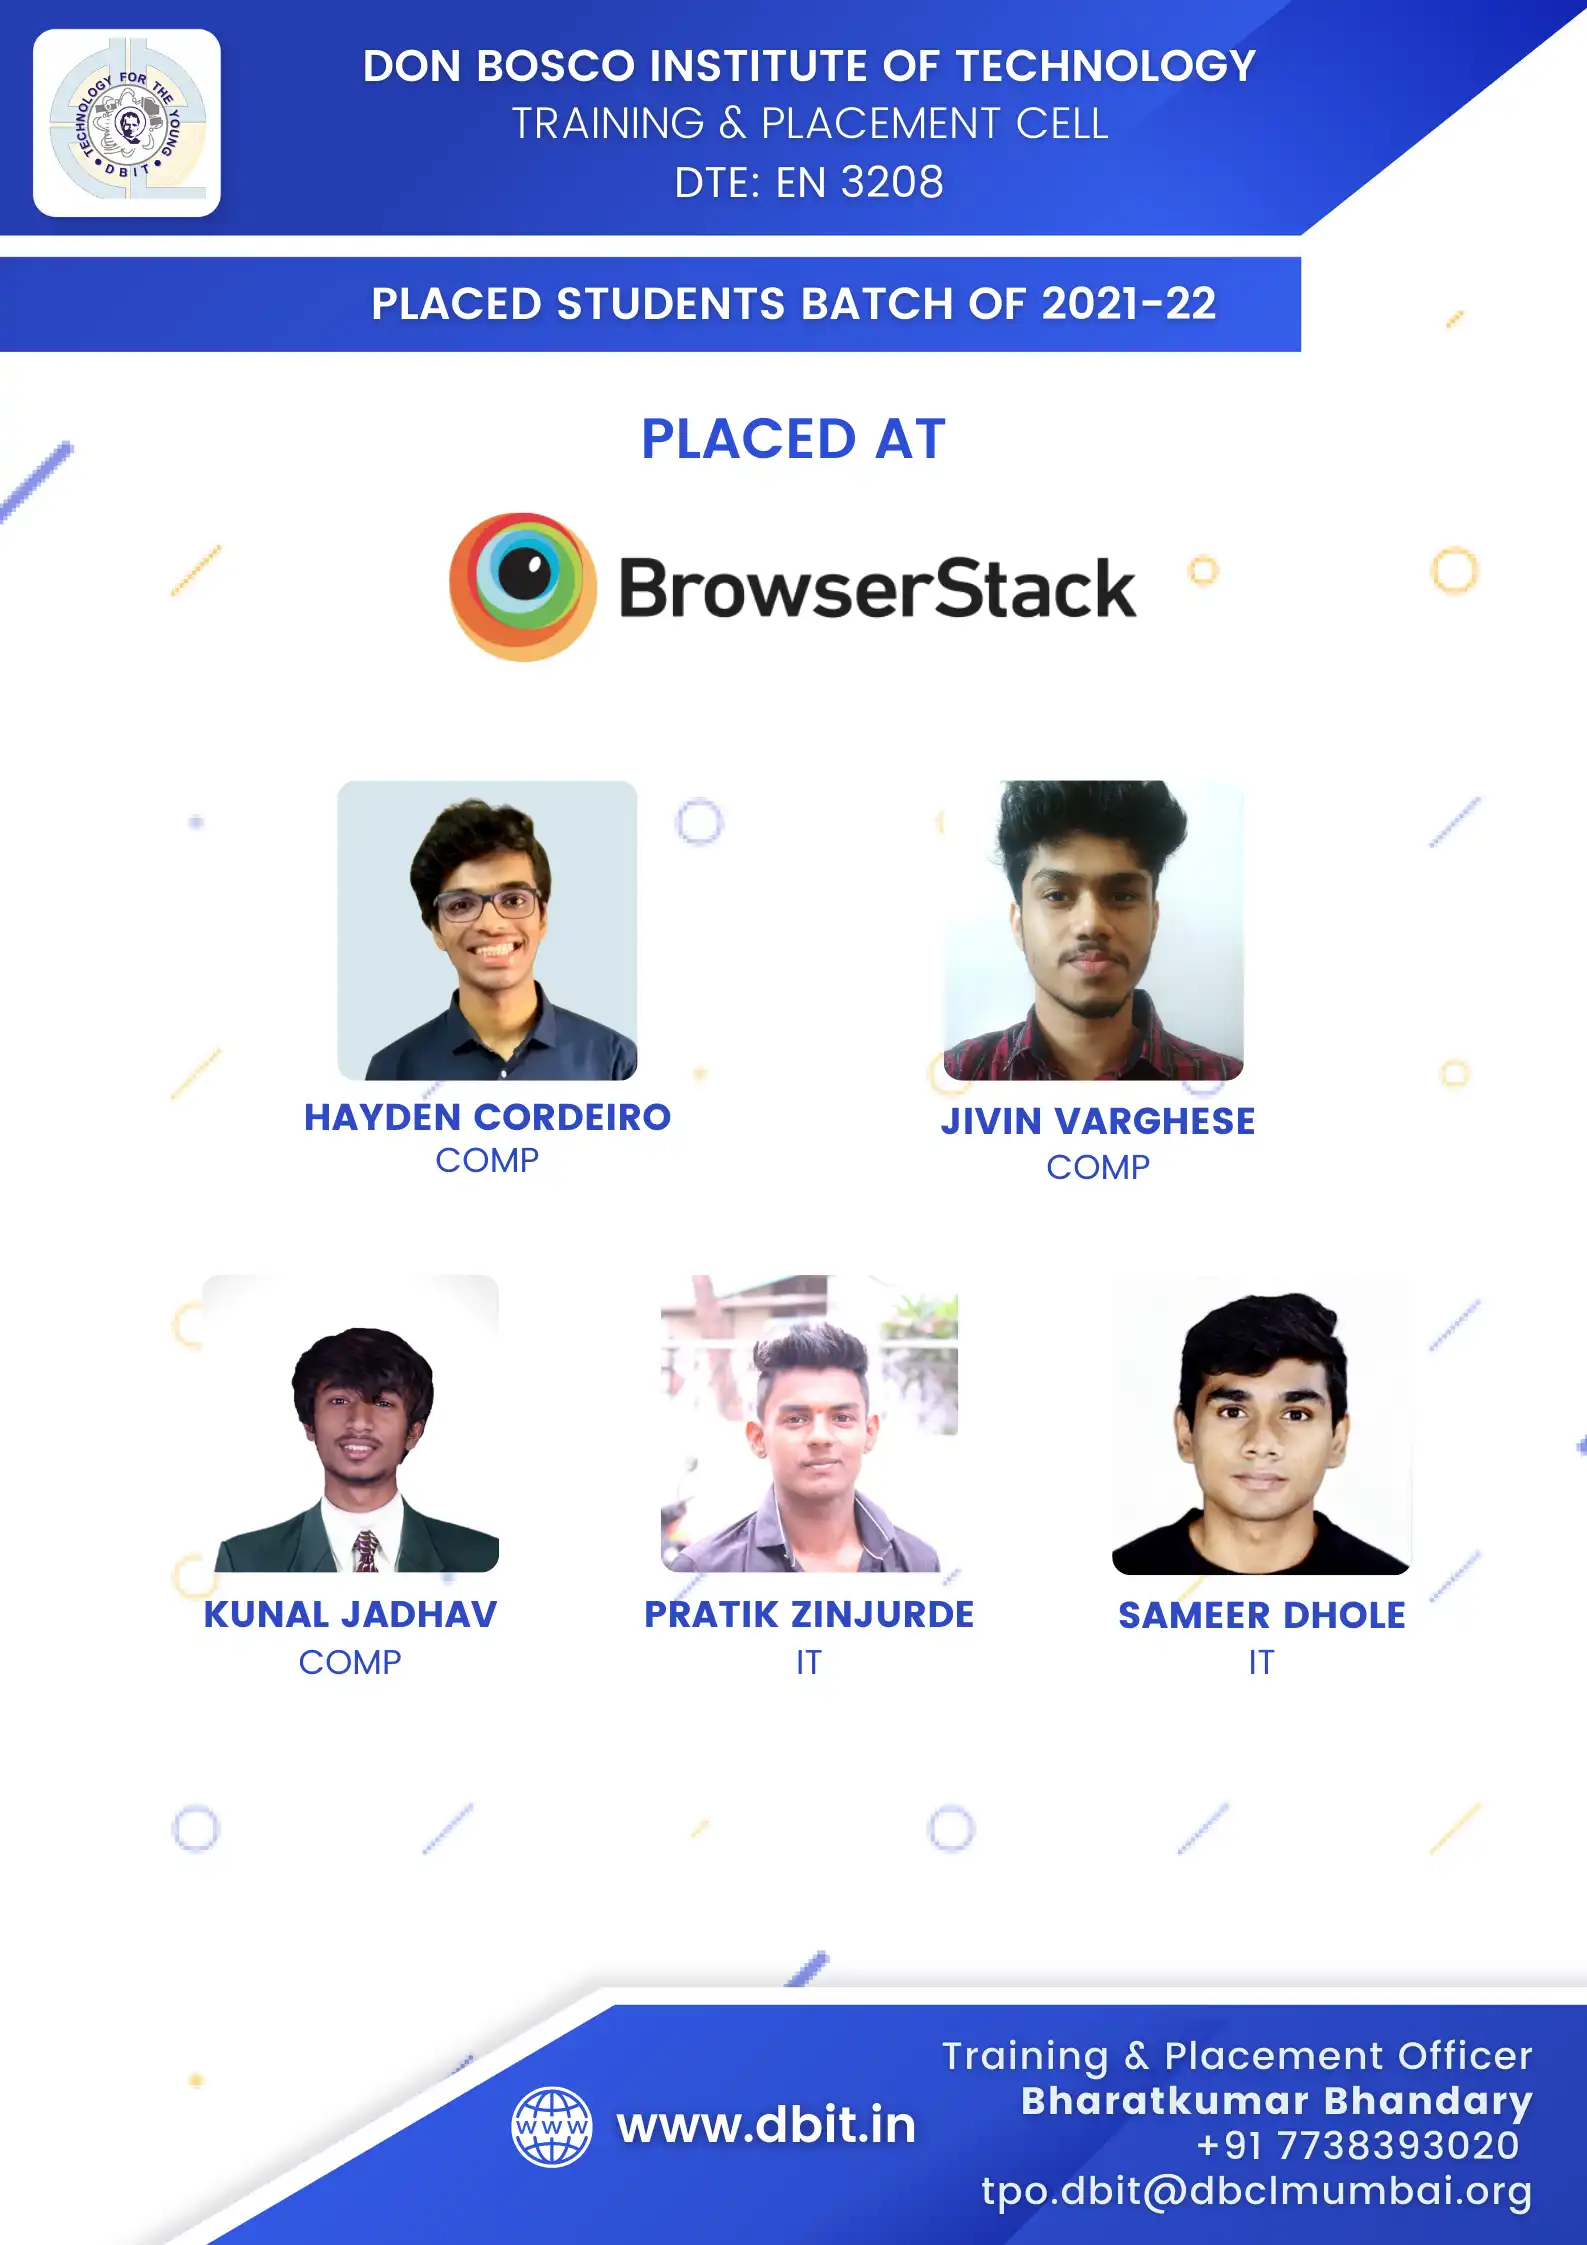 Browser Stack Super Dream Company